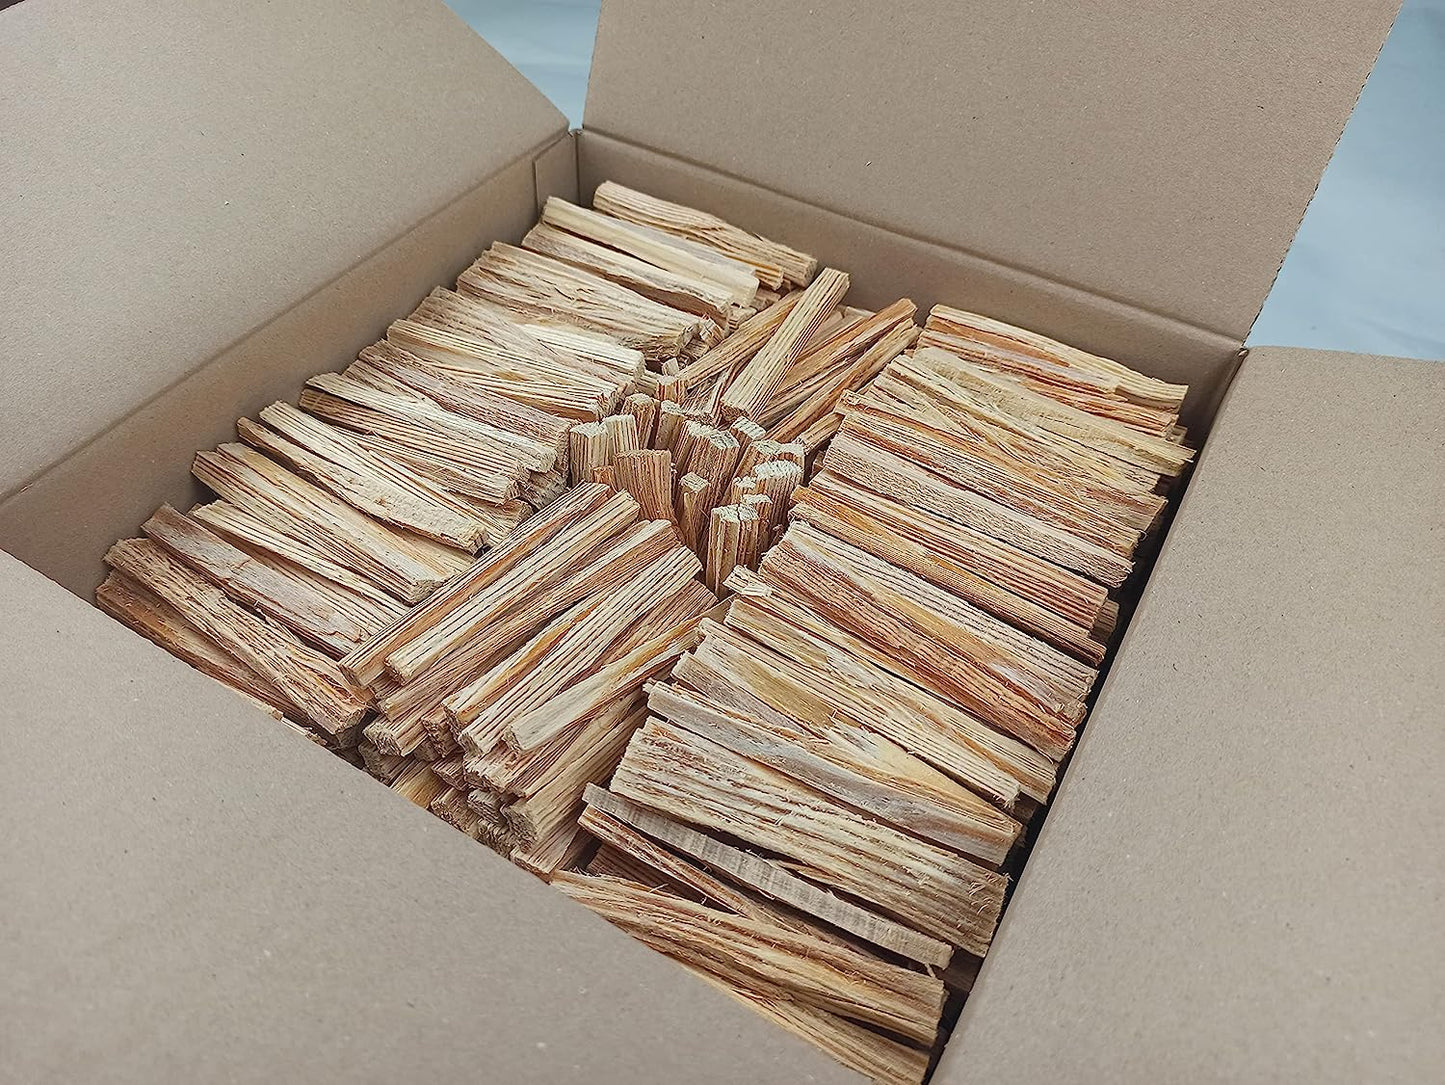 FEUERKAISER Kienspan Fatwood (ca. 500 Sticks, 4,5kg, Länge 10cm) natürlichster Bio Anzünder, Feueranzünder, Grillanzünder, Kaminanzünder, Ofenanzünder